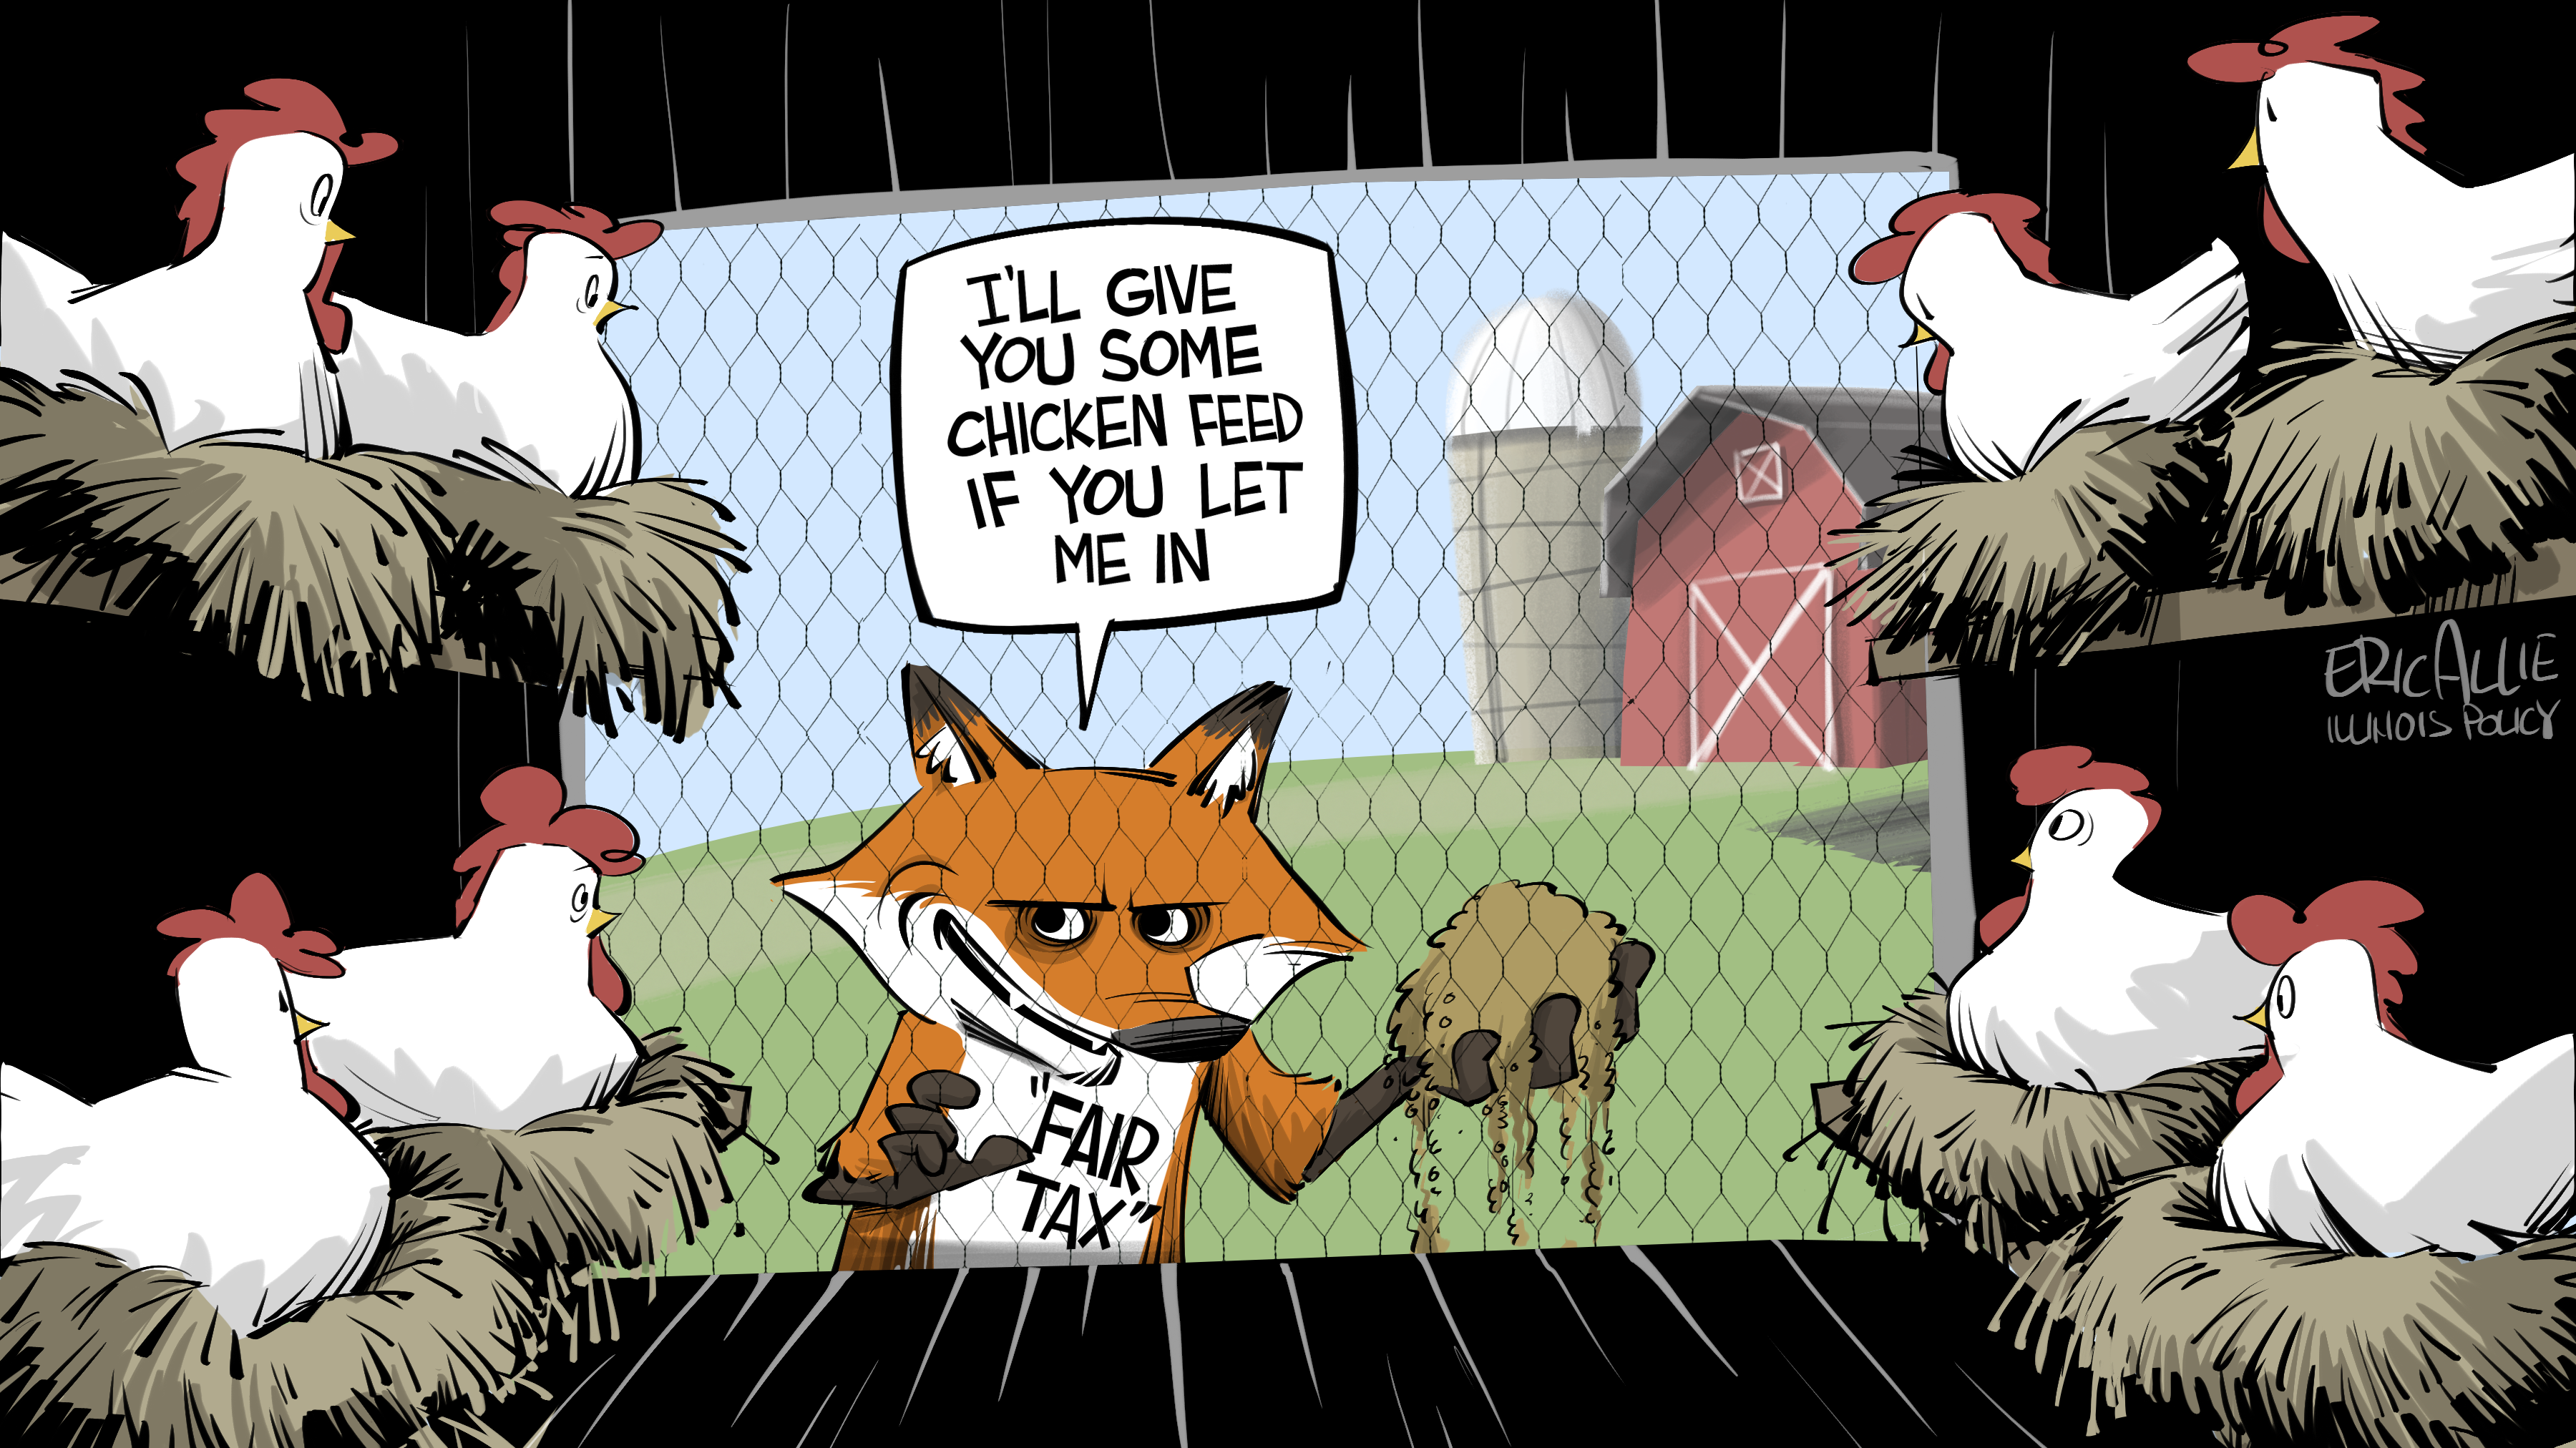 fair tax fox in the hen house